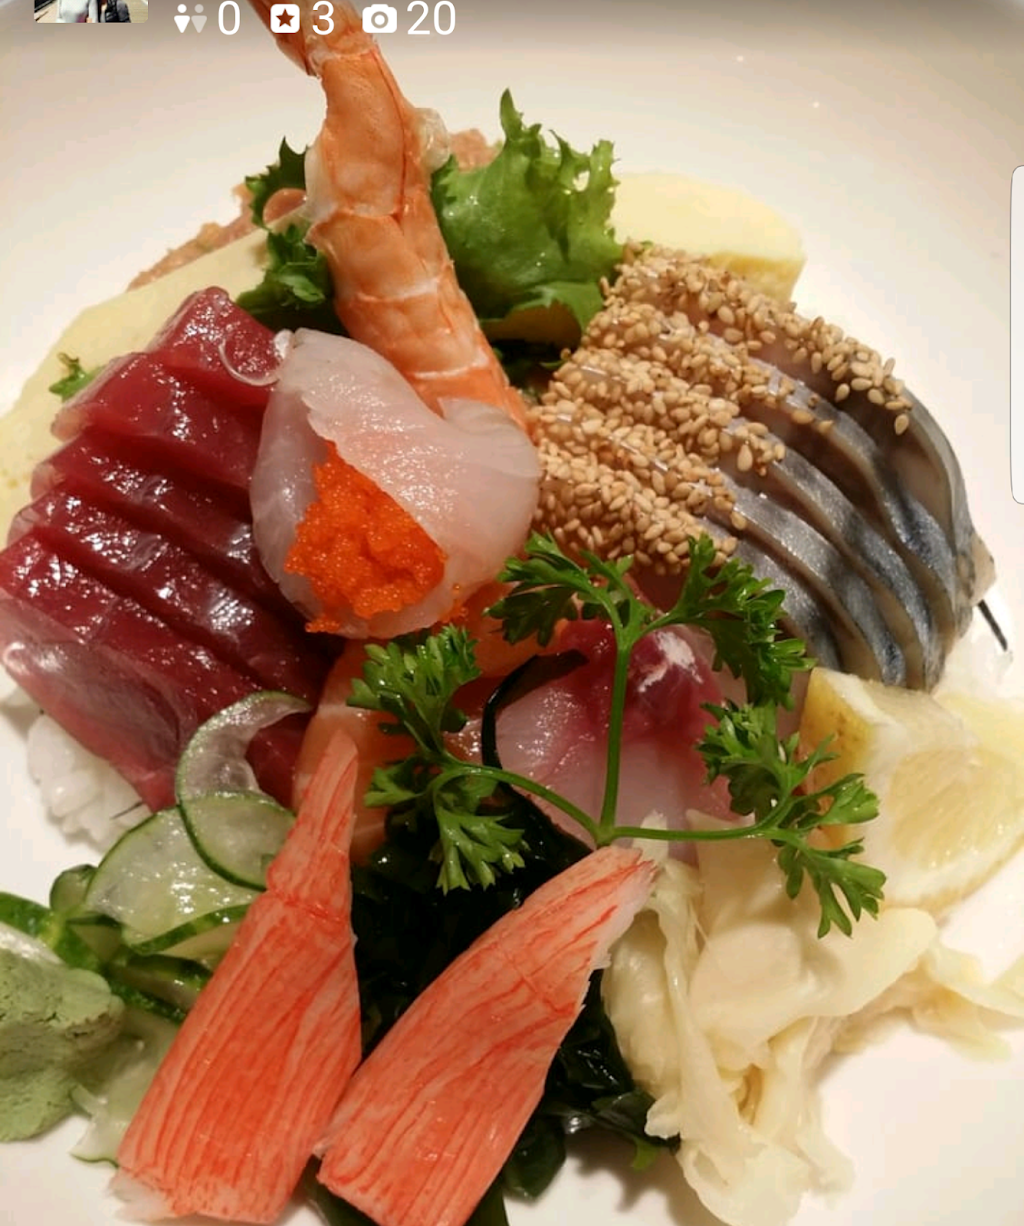 Sushi House of Hoboken | restaurant | 155 1st St, Hoboken, NJ 07030, USA | 2016567788 OR +1 201-656-7788